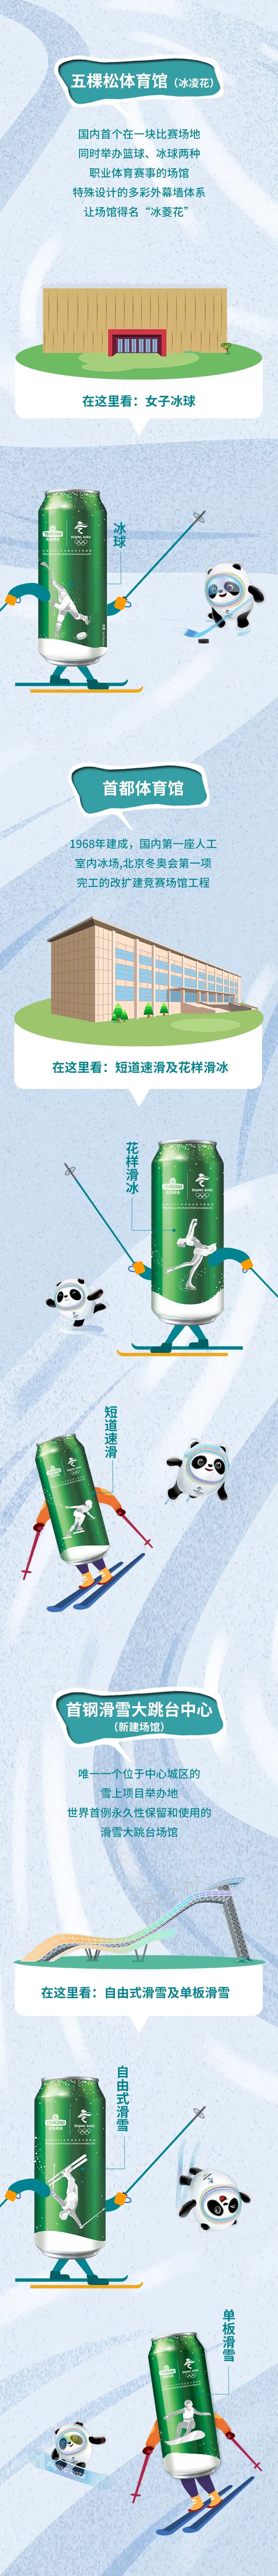 青岛啤酒推出“东奥冰雪罐”，将15个官方竞技项目巧妙呈现于罐身